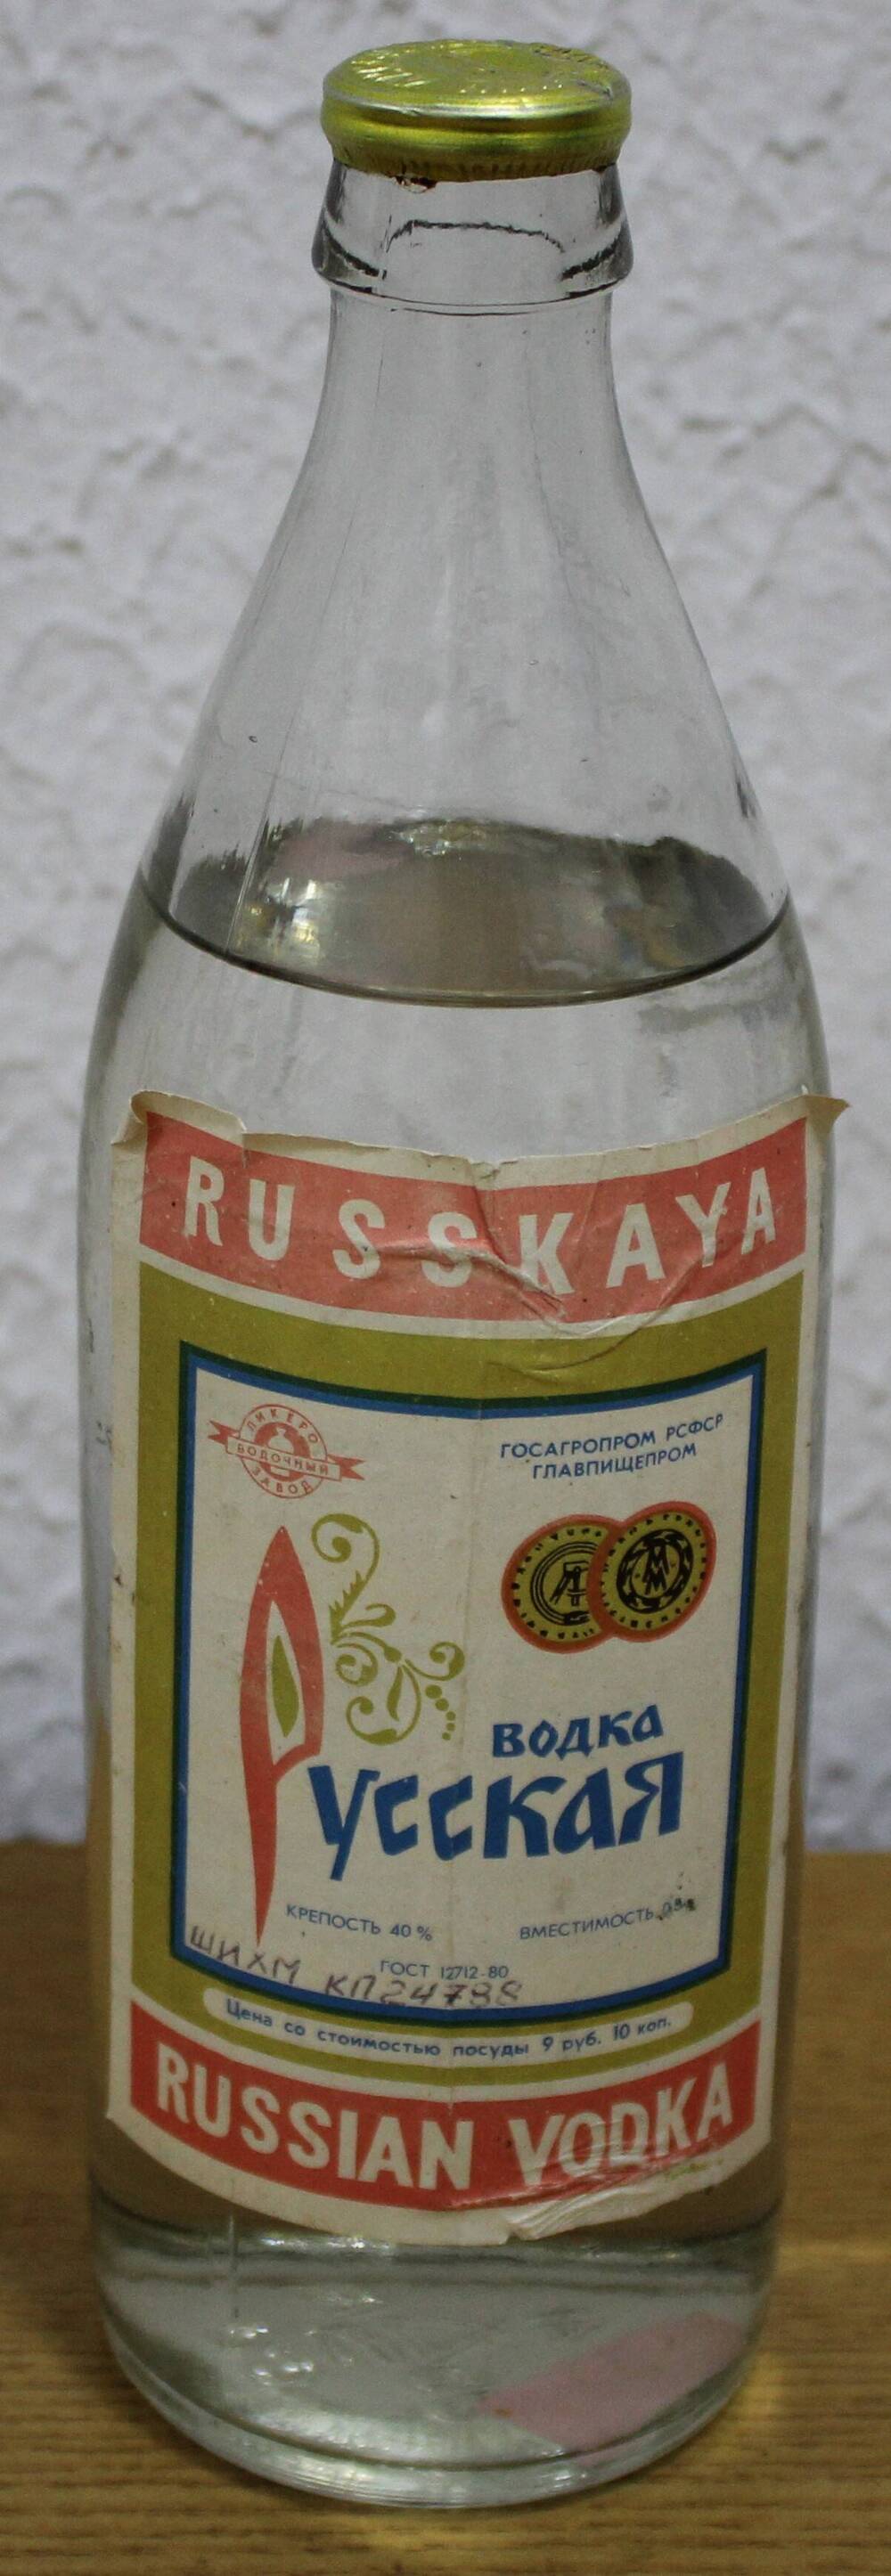 Бутылка Водка Русская.